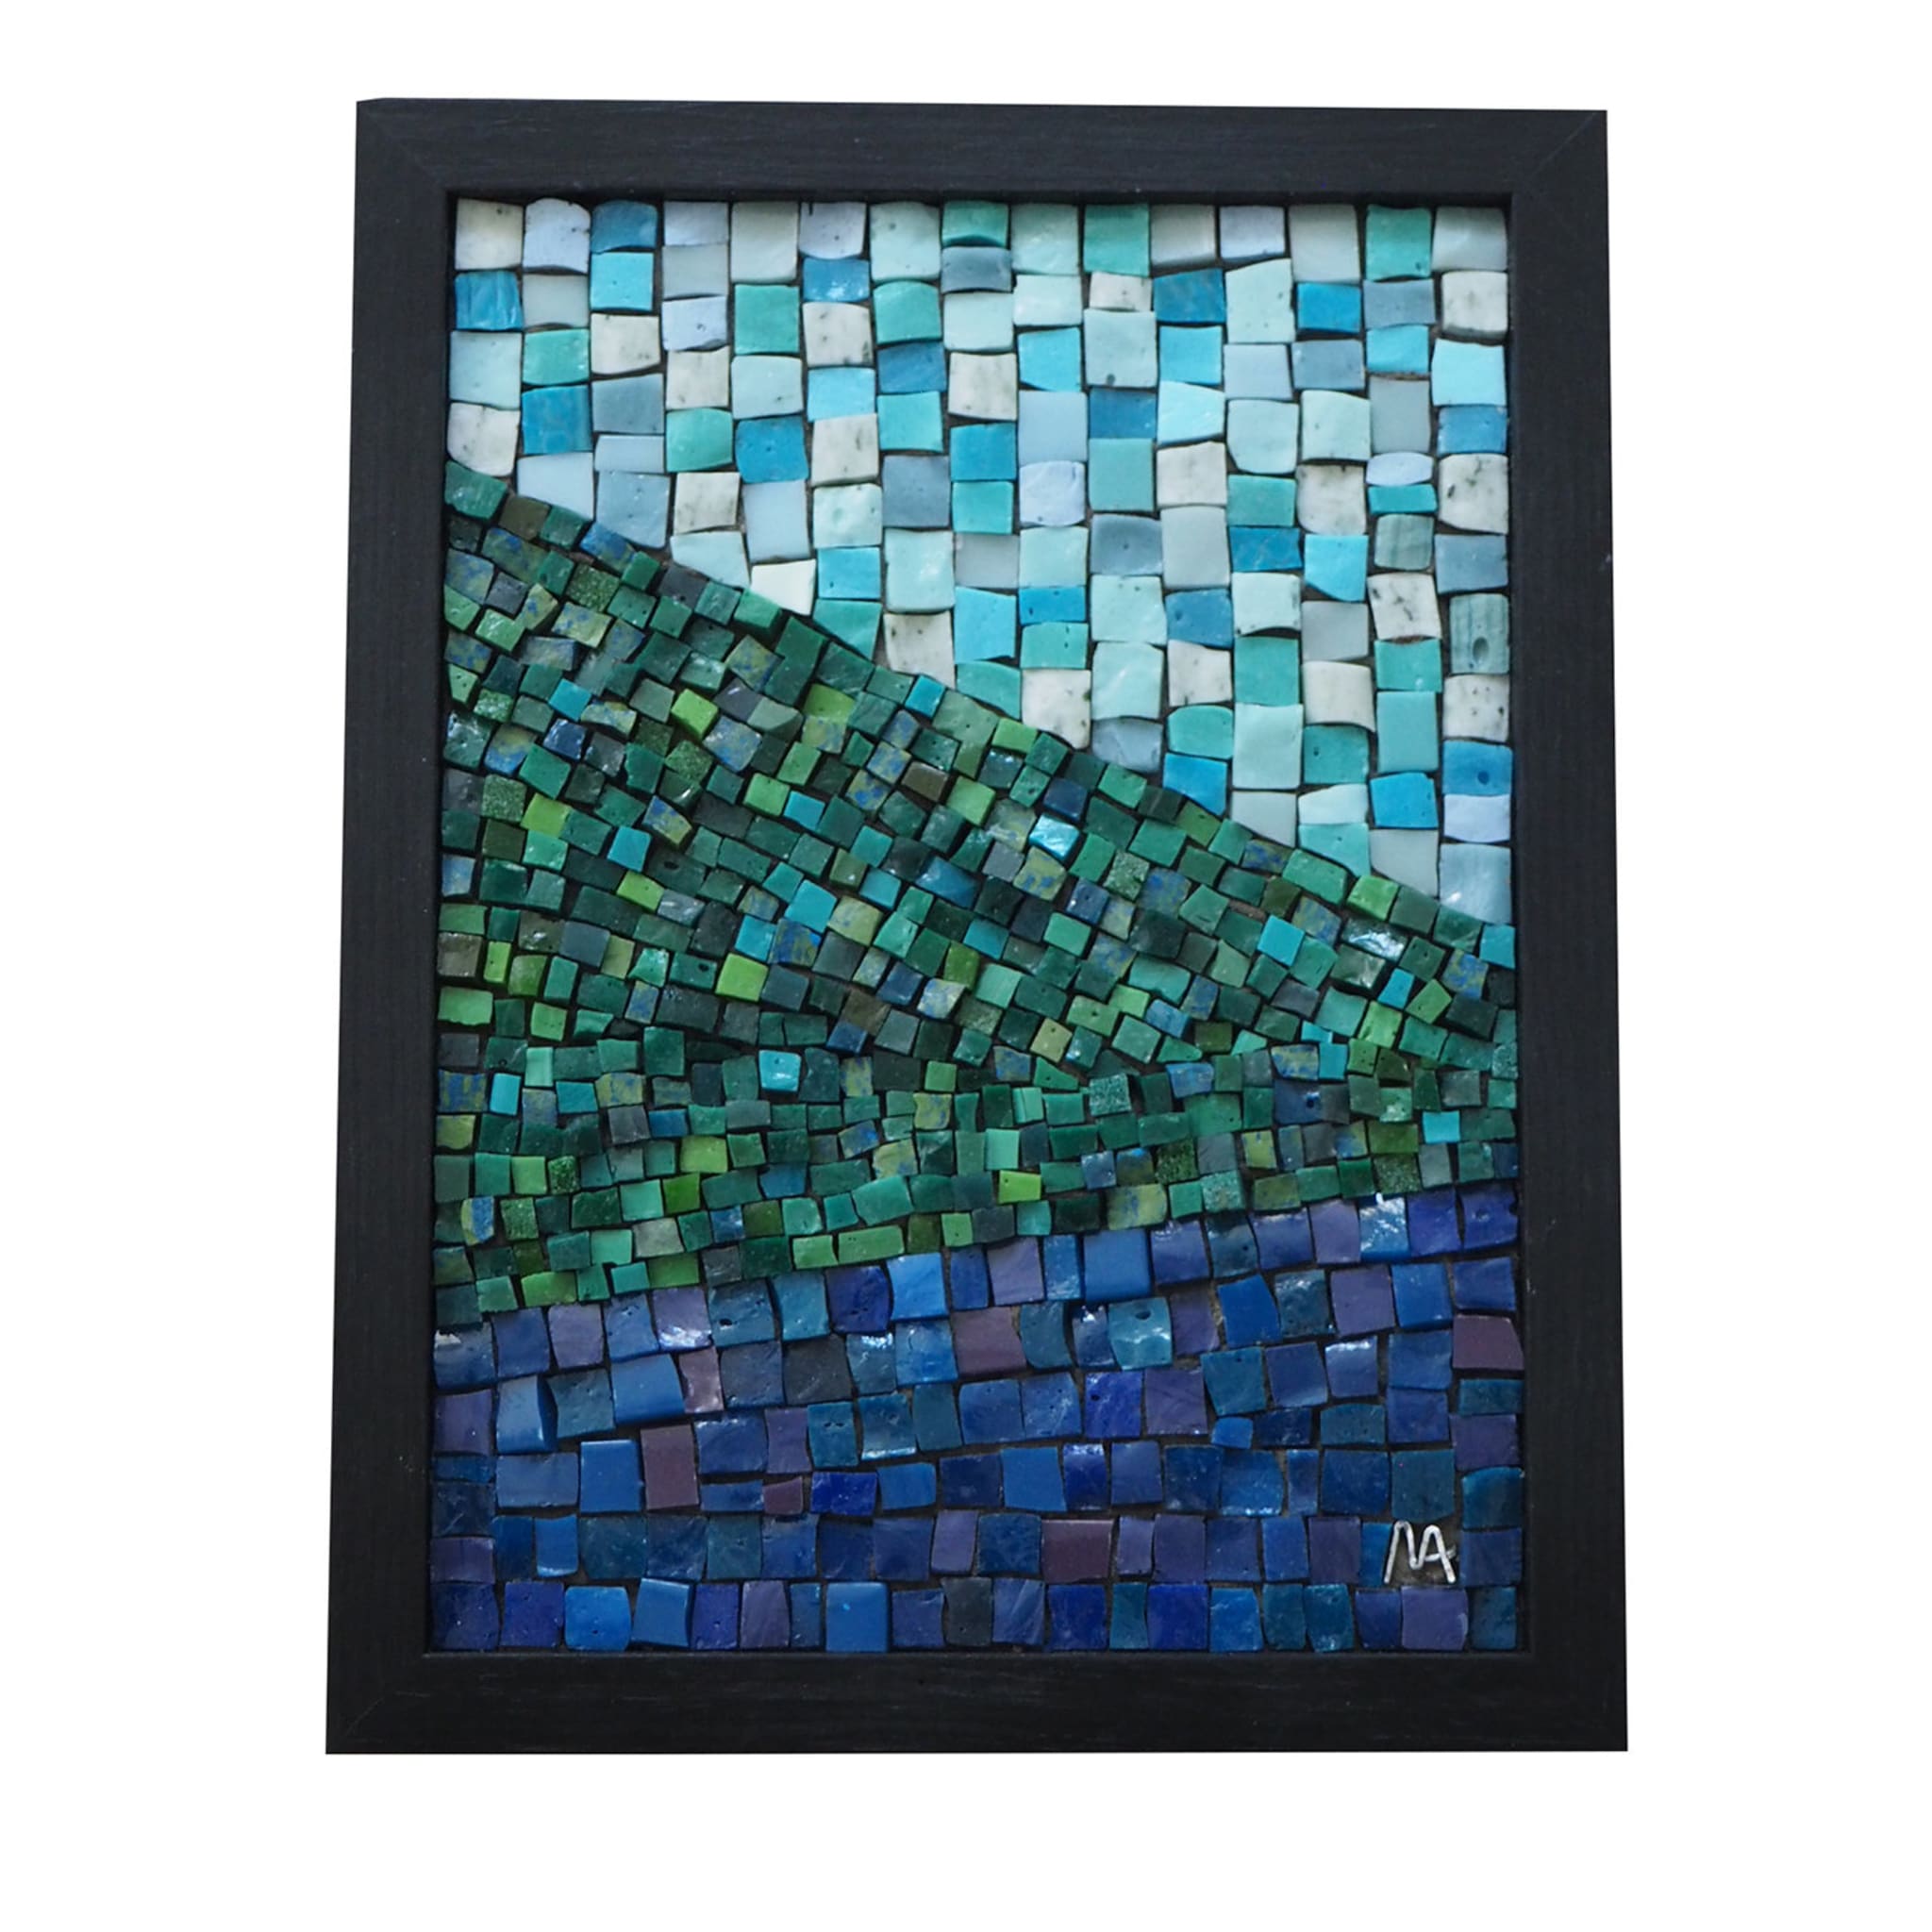 Panel de mosaico Autunno 1.1 - Vista principal